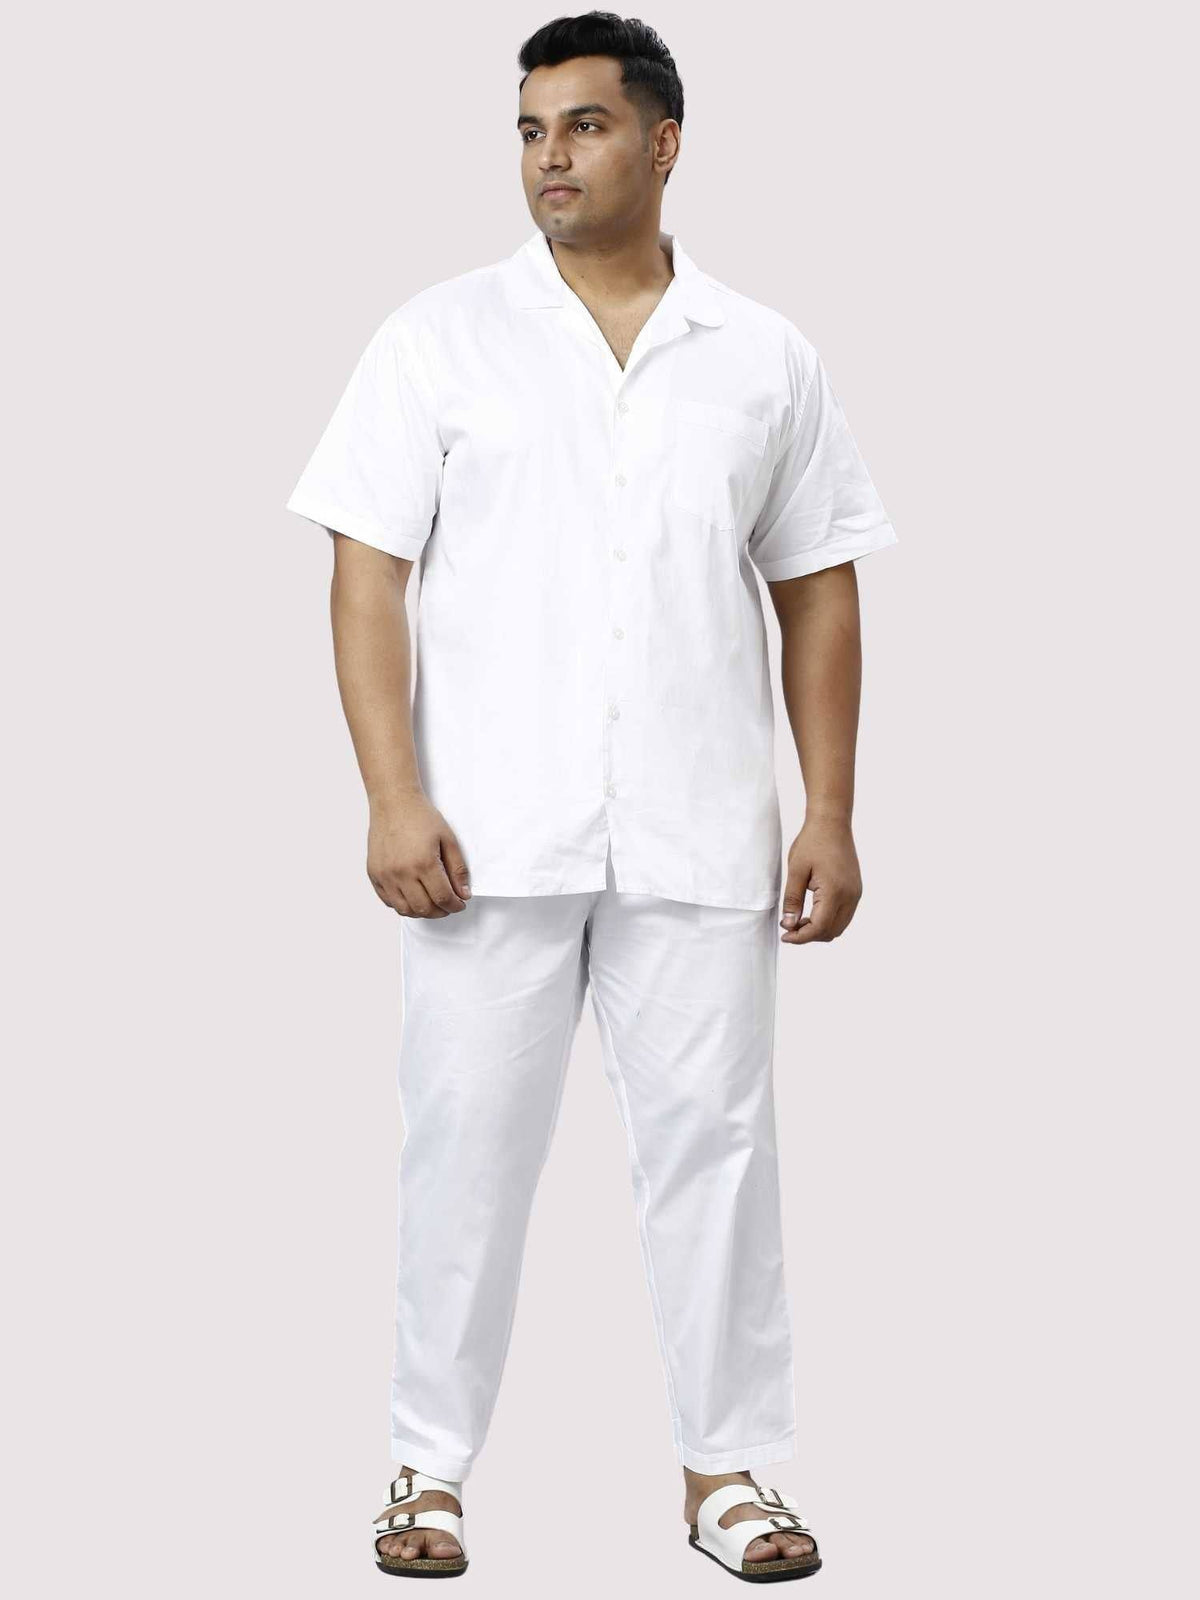 Titan Solid White Full Co-ords Set Men's Plus Size - Guniaa Fashions